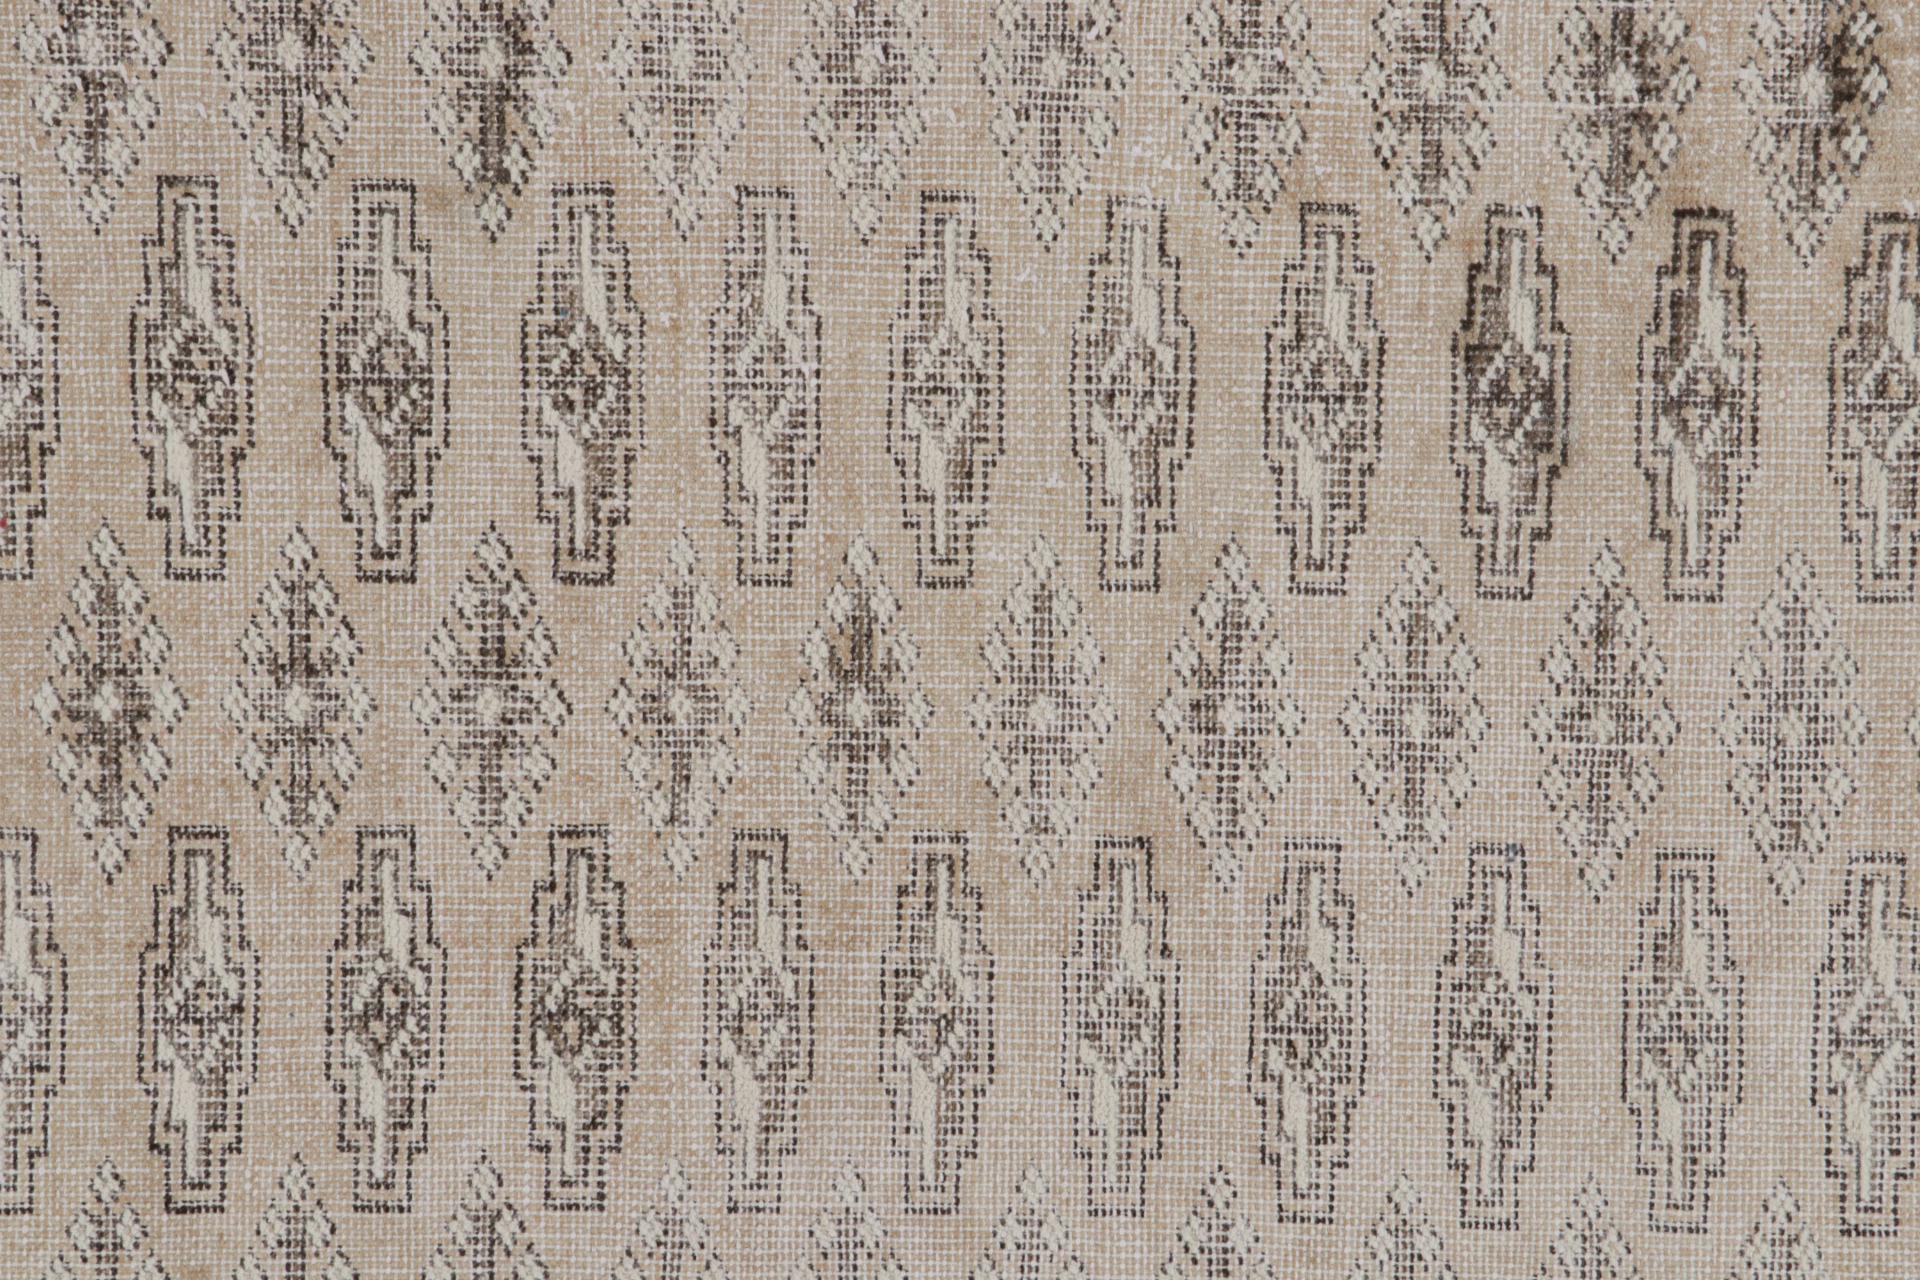 Wool Vintage Persian Kerman Rug With Beige-Brown Geometric Patterns, From Rug & Kilim For Sale